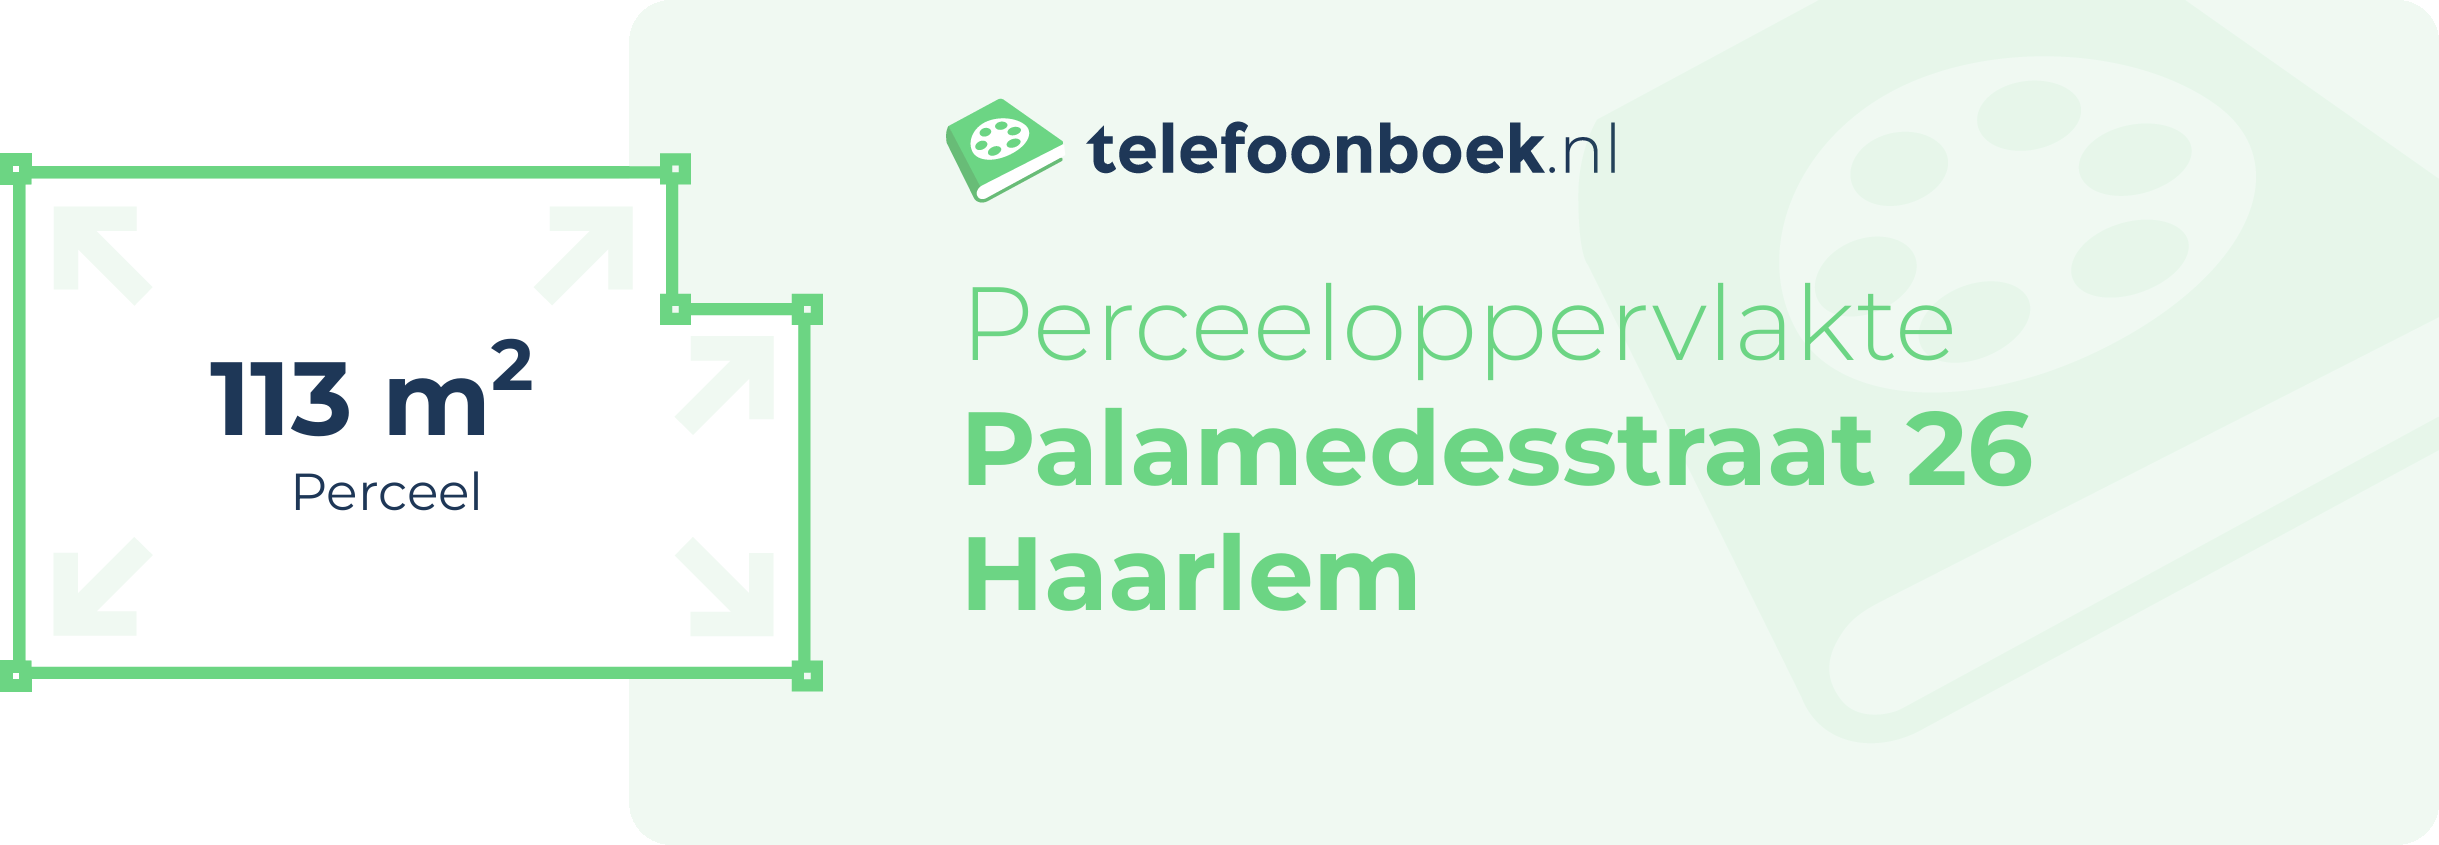 Perceeloppervlakte Palamedesstraat 26 Haarlem